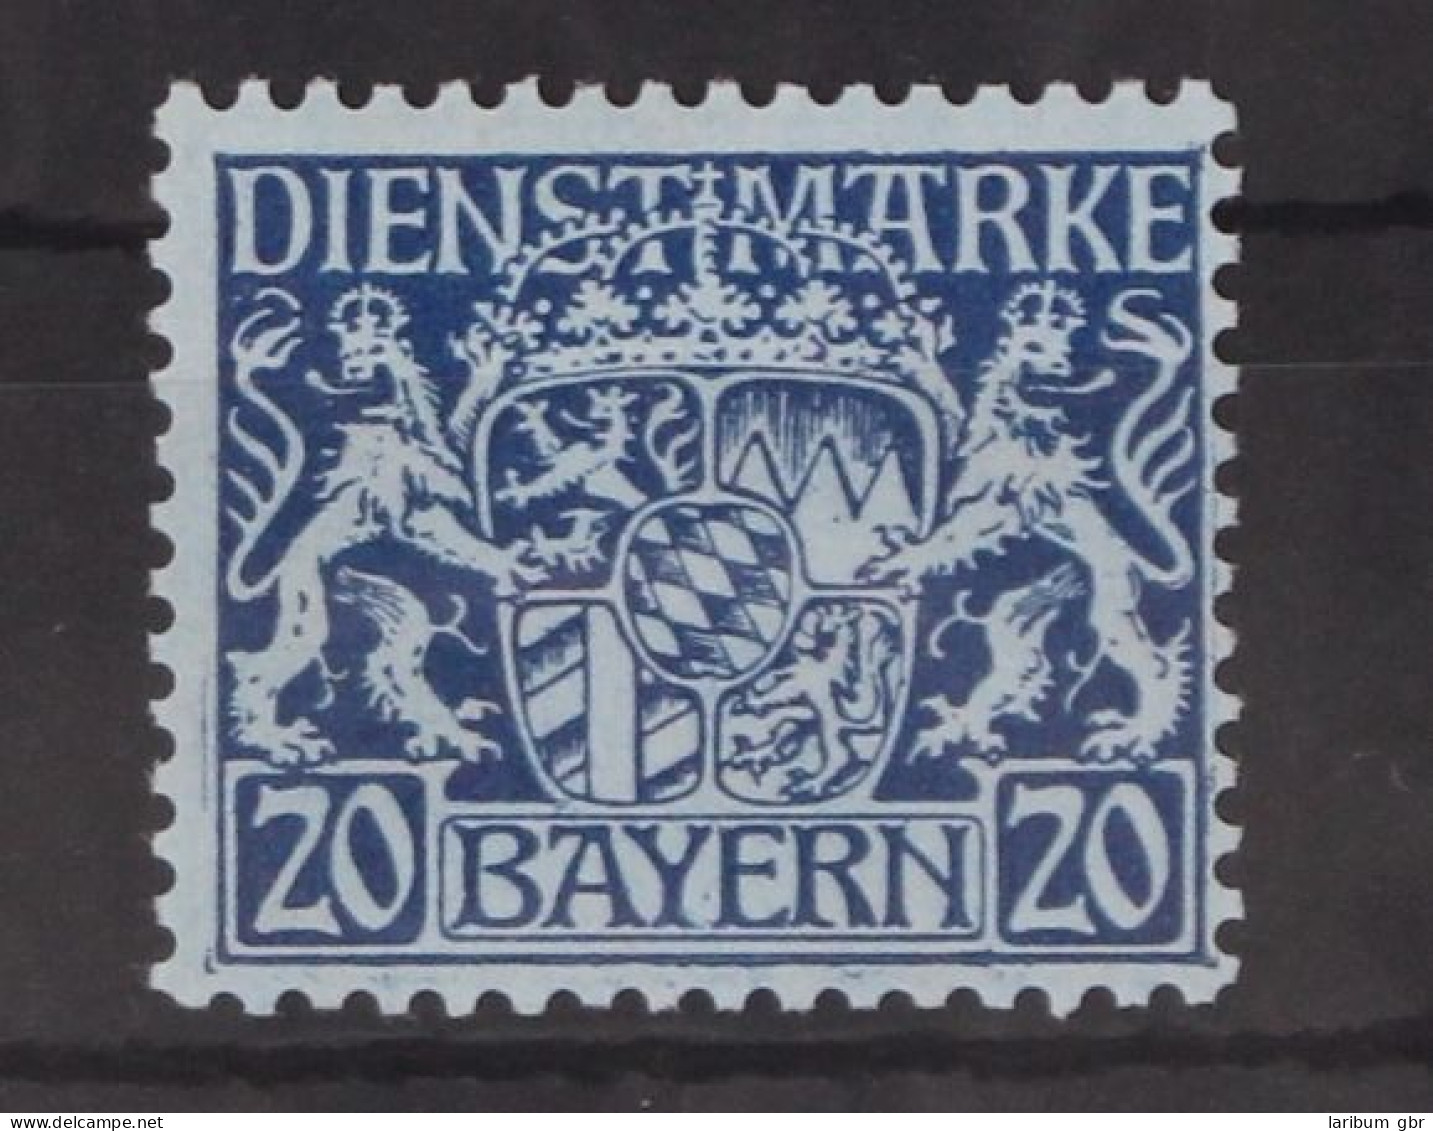 Bayern Dienstmarken 20 Postfrisch #GM098 - Postfris